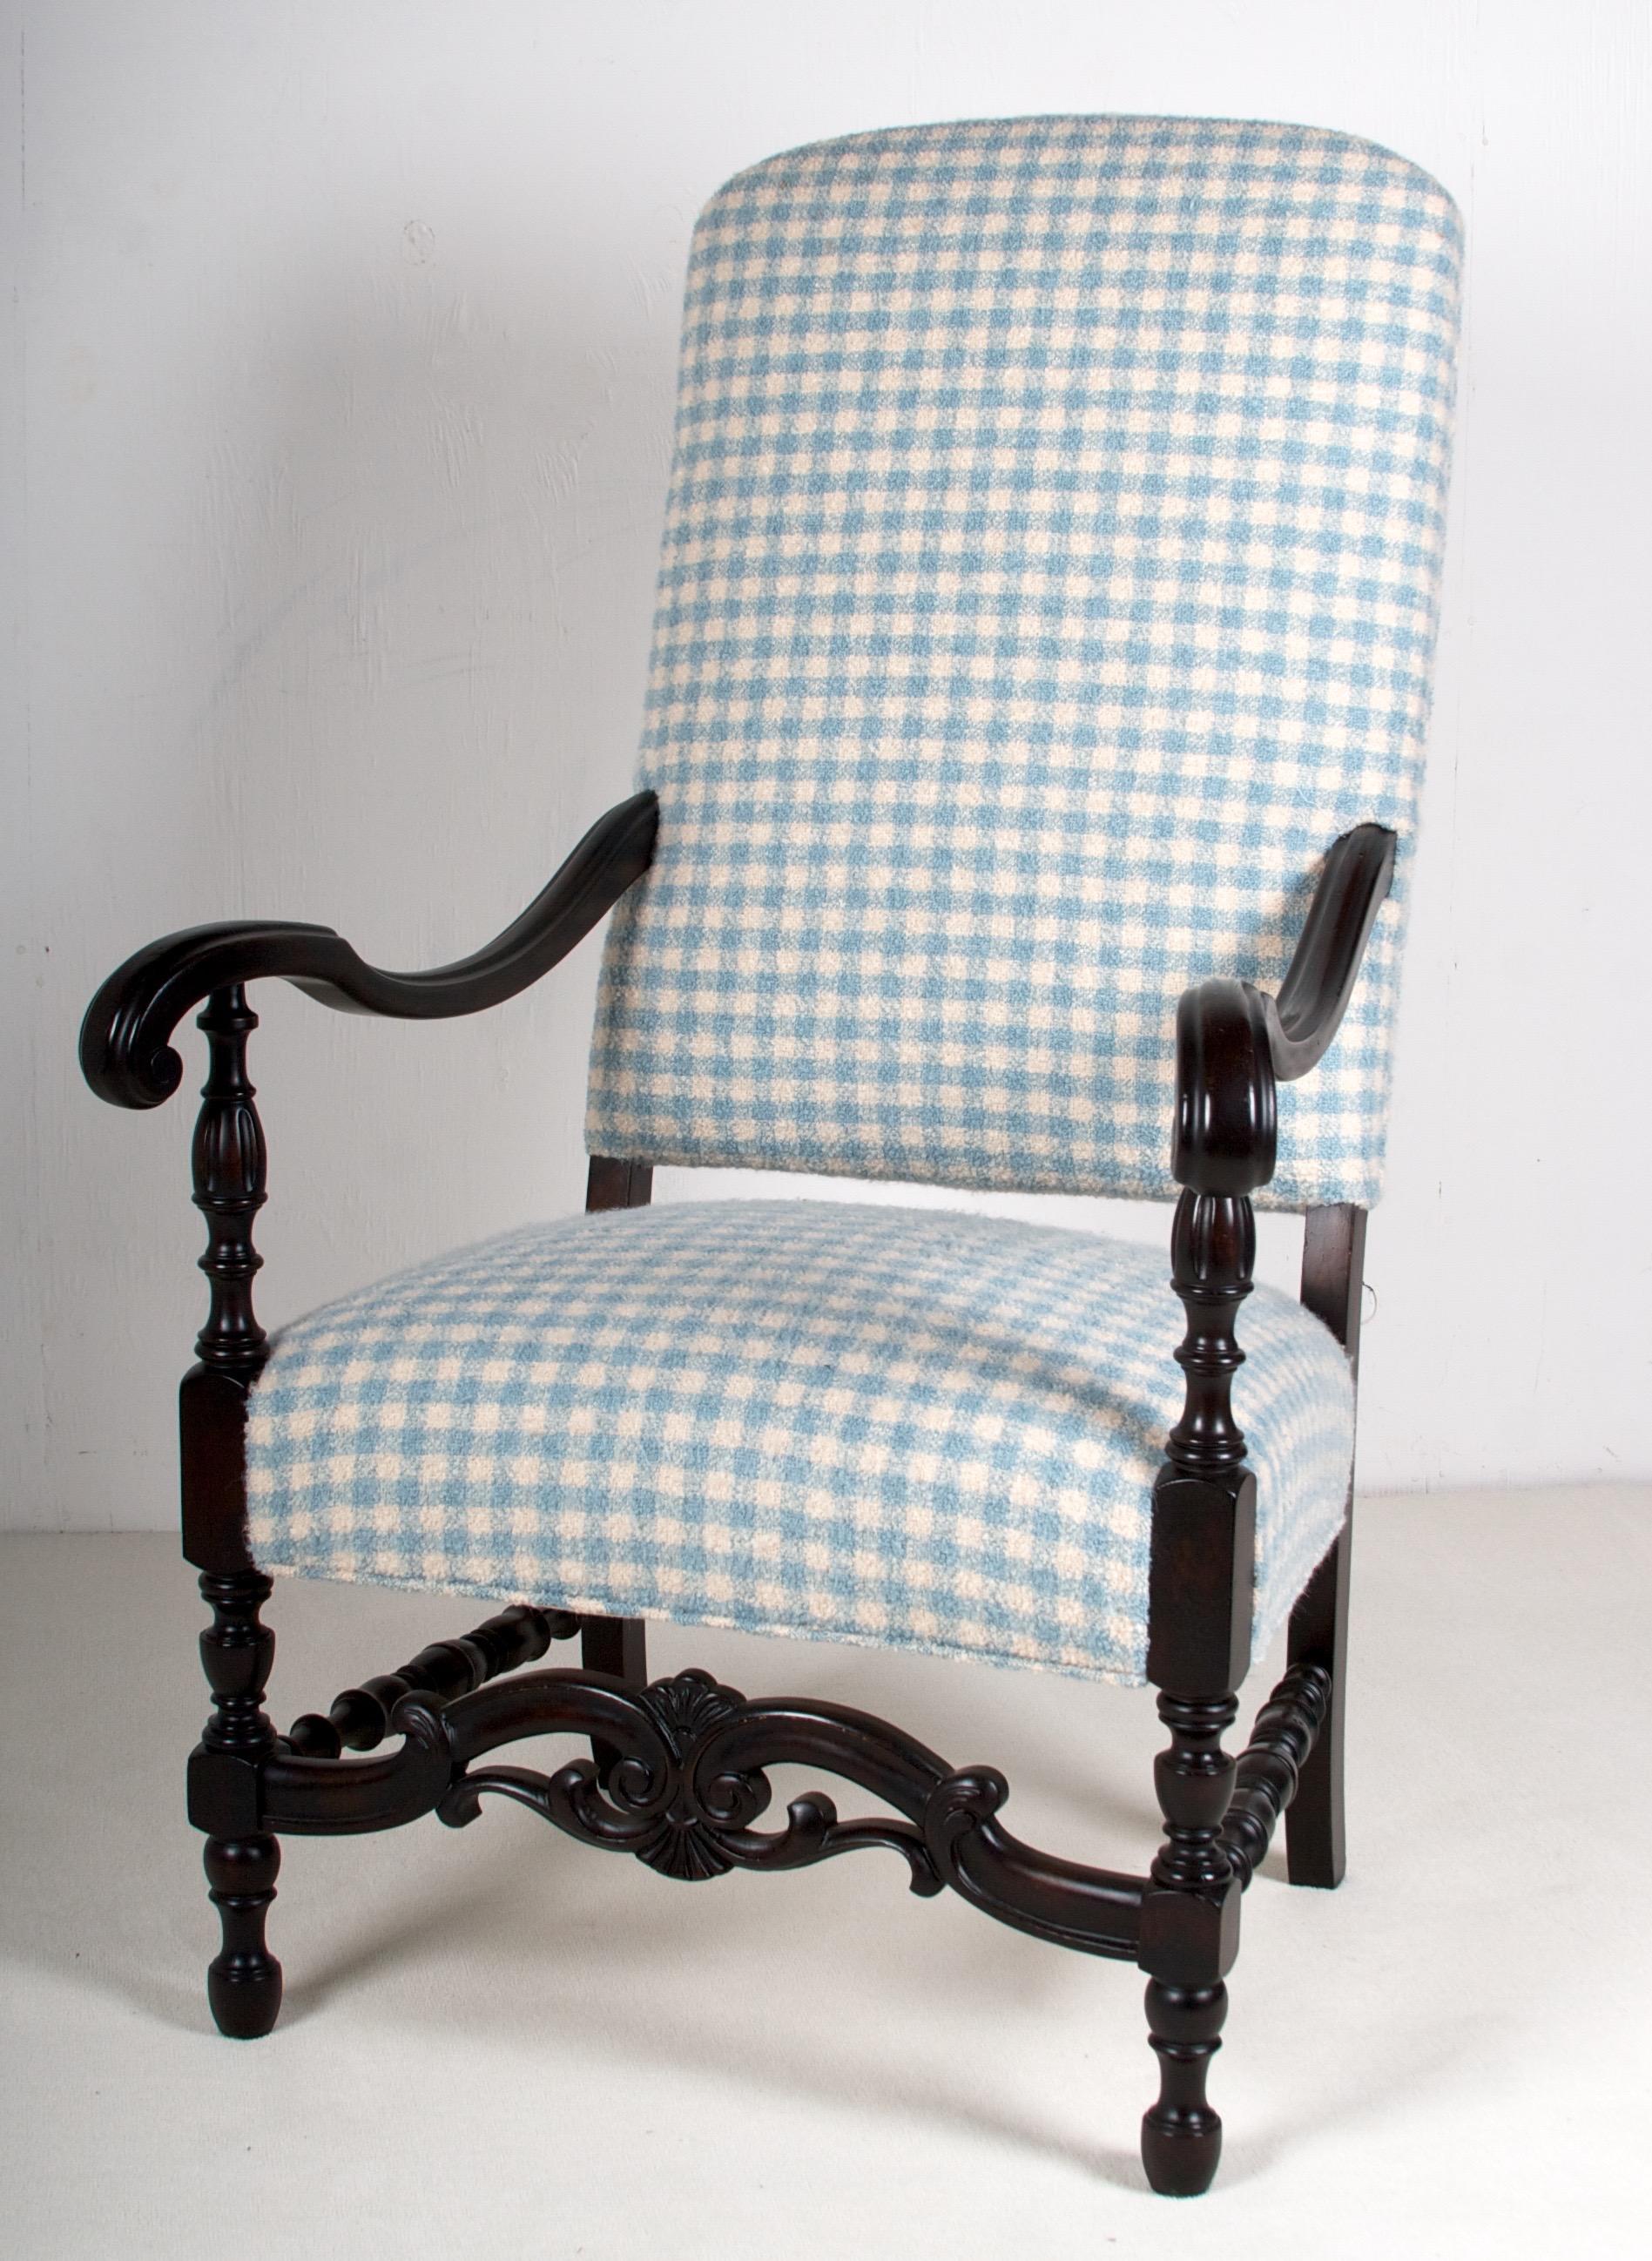 Der gesamte Stuhl wurde sanft restauriert, der Polsterstoff ist der feinste Alpaka-Boucl in einem weichen cremefarbenen und blauen Karo. Das Alpaka stammt von Sandra Jorday
Kollektion Alpaka vonima Alpaca. Der Stoff ist aus dem feinsten und